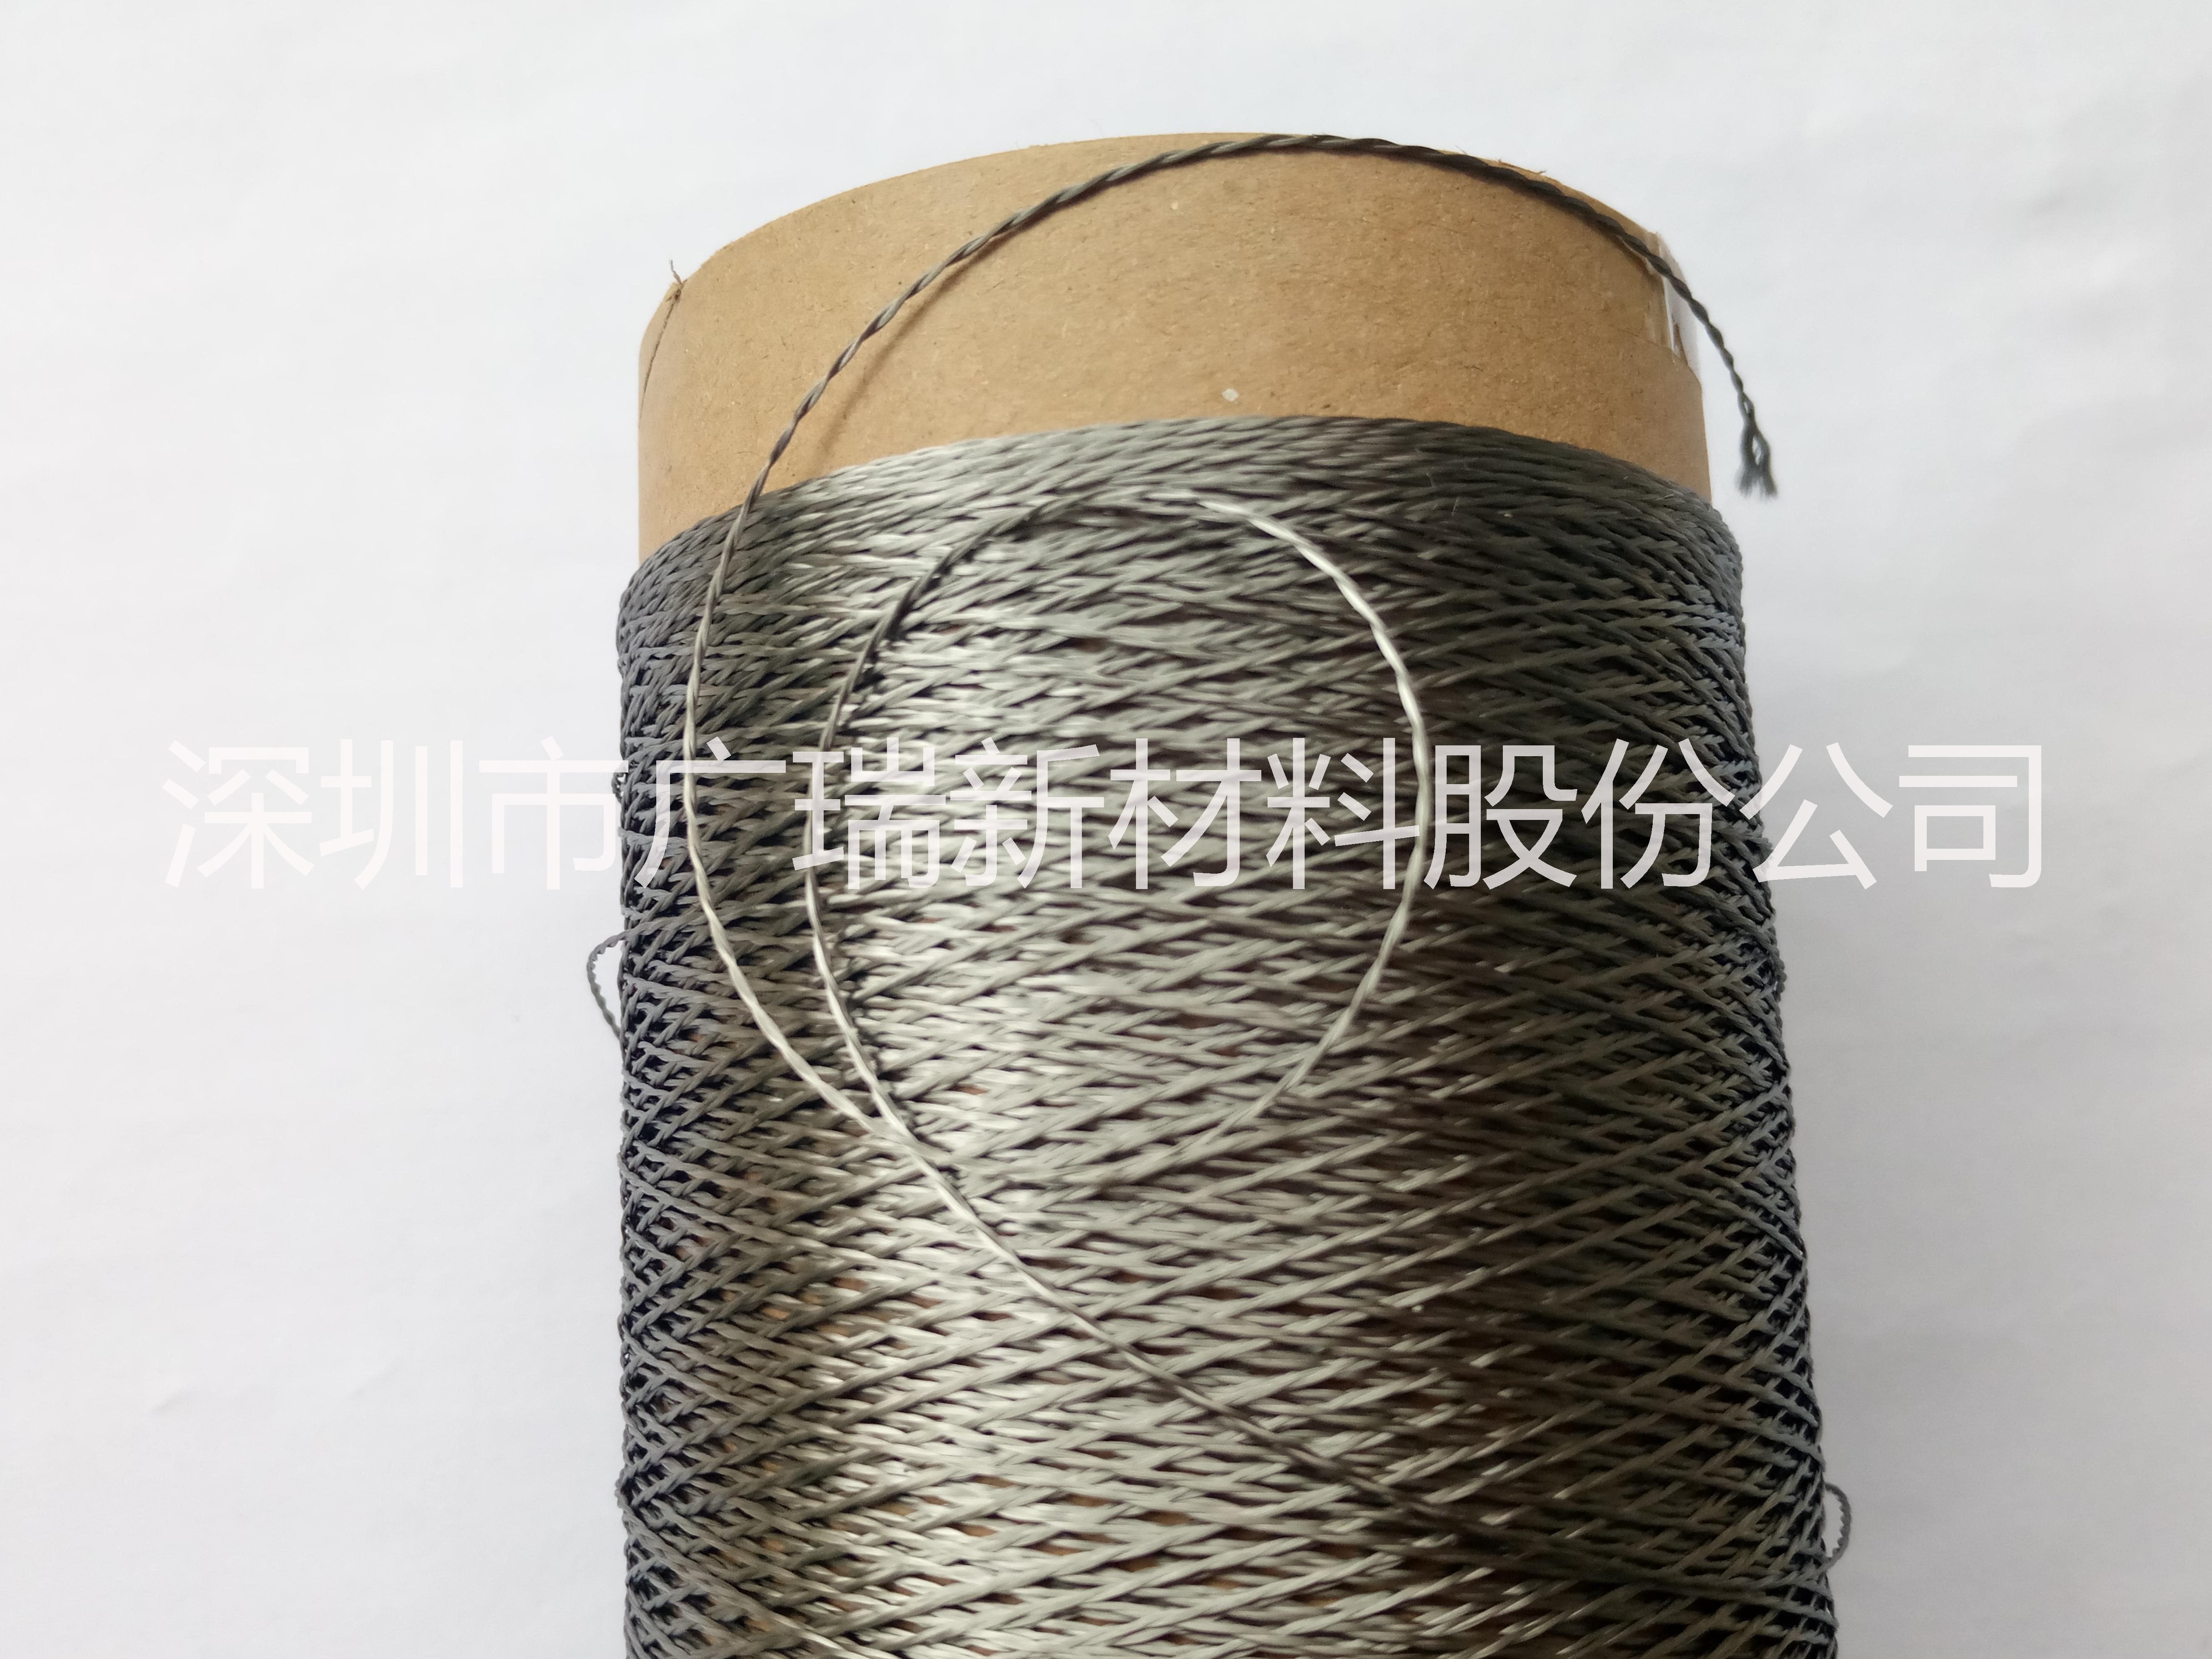 【供应定制】316L不锈钢纤维高温金属线、绳、套管、织带、布等系列产品批发图片